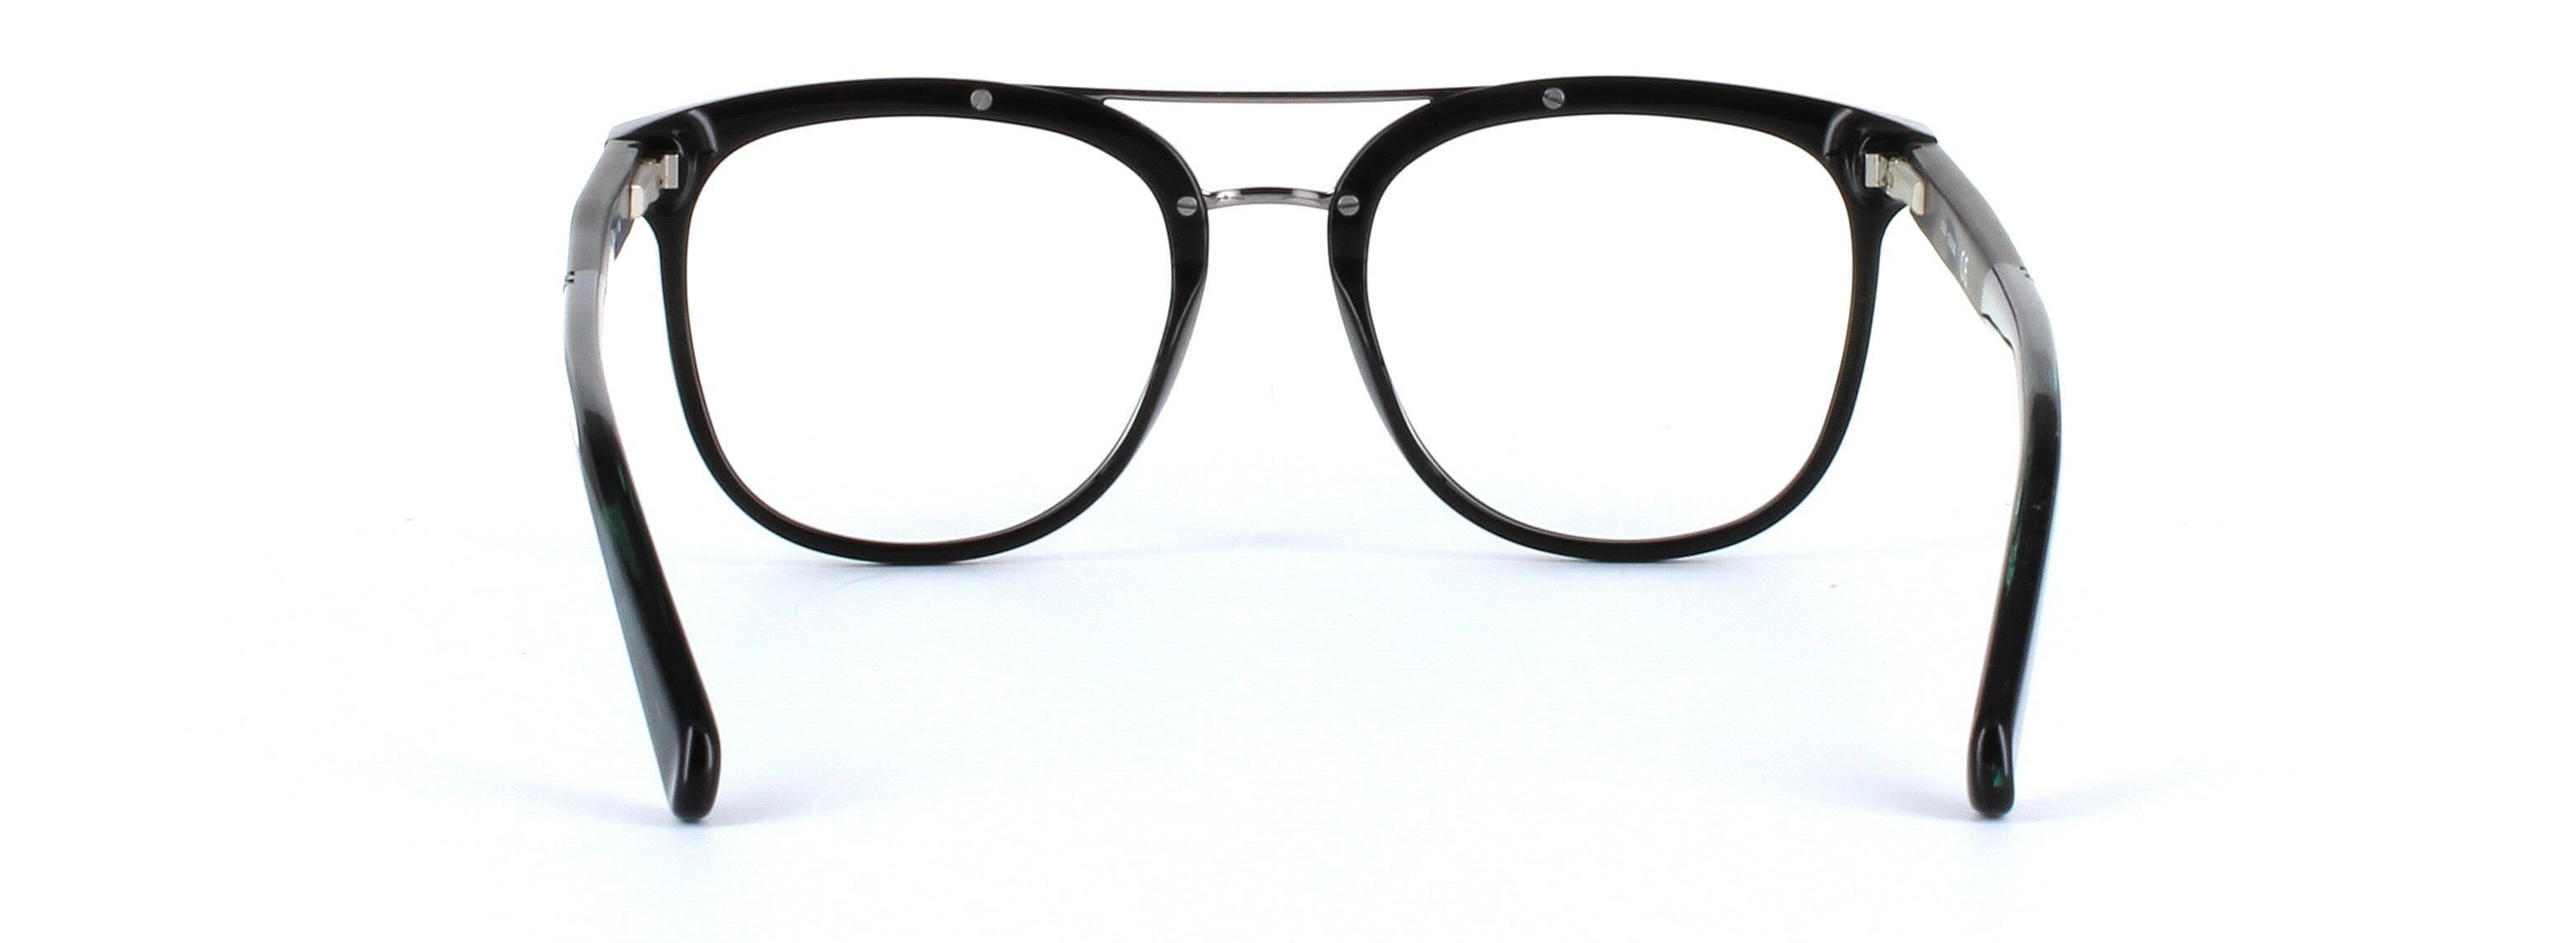 GUESS (GU1953-001) Black Full Rim Square Acetate Glasses - Image View 3